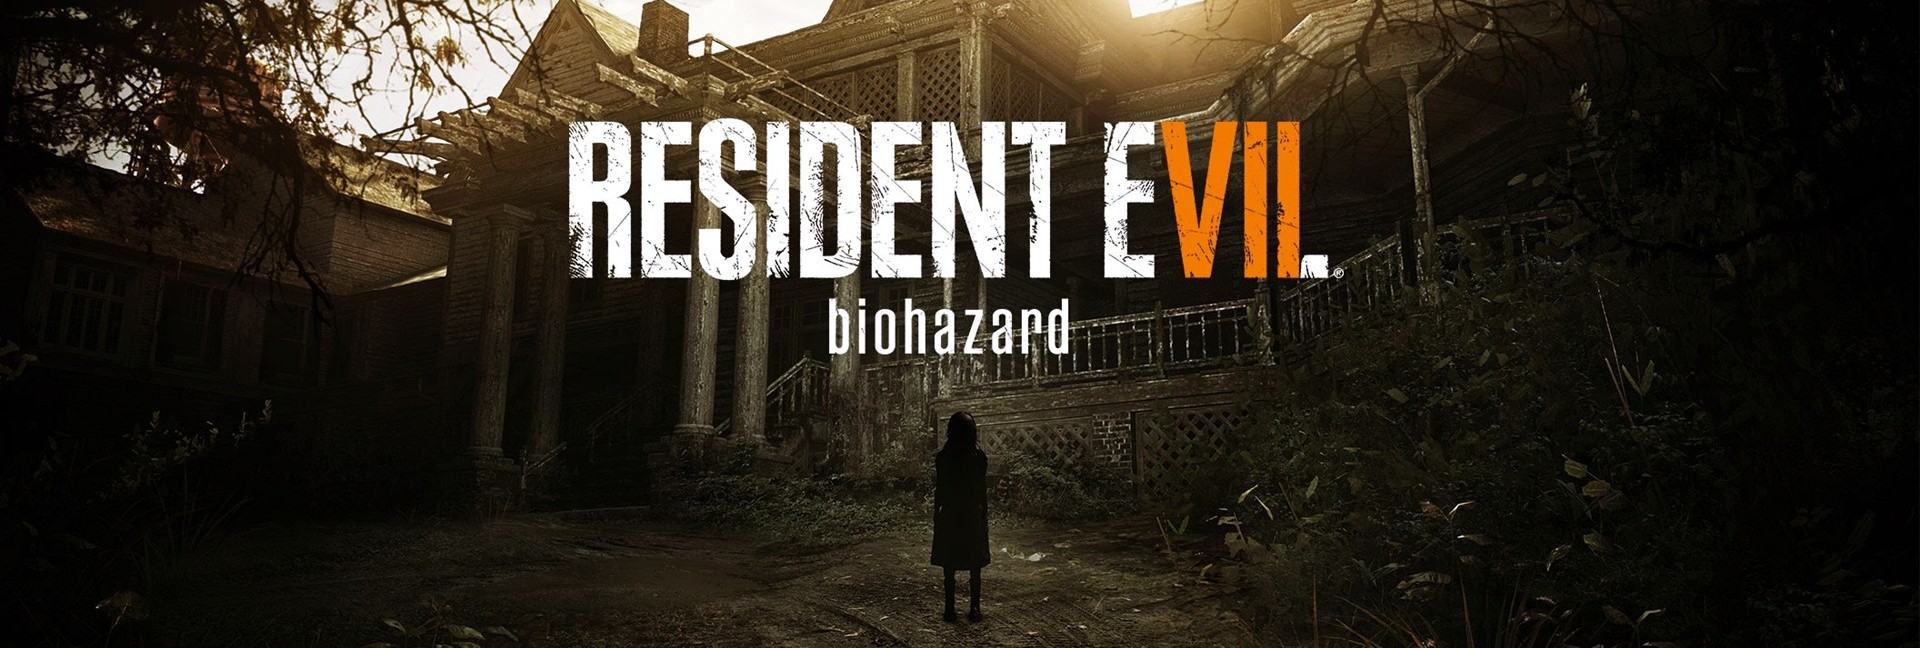 Resident-Evil-7-biohazard-2016-Wallpaper-01302